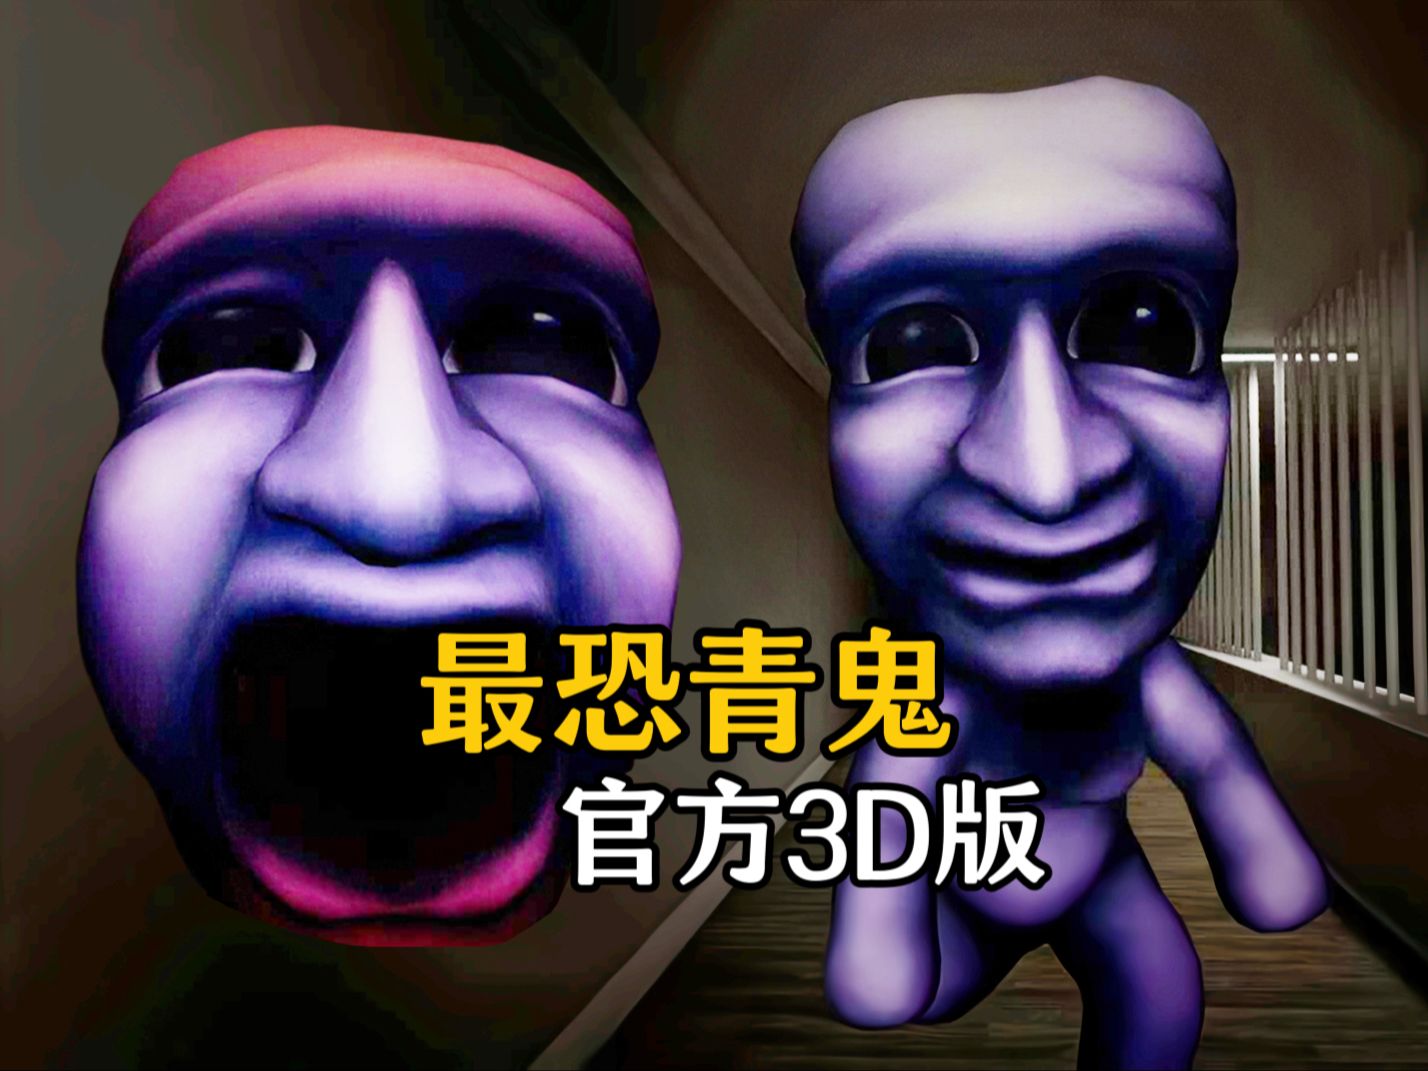 吓哭无数人的童年阴影恐游【青鬼】官方3D版 全流程惊悚搞笑解说